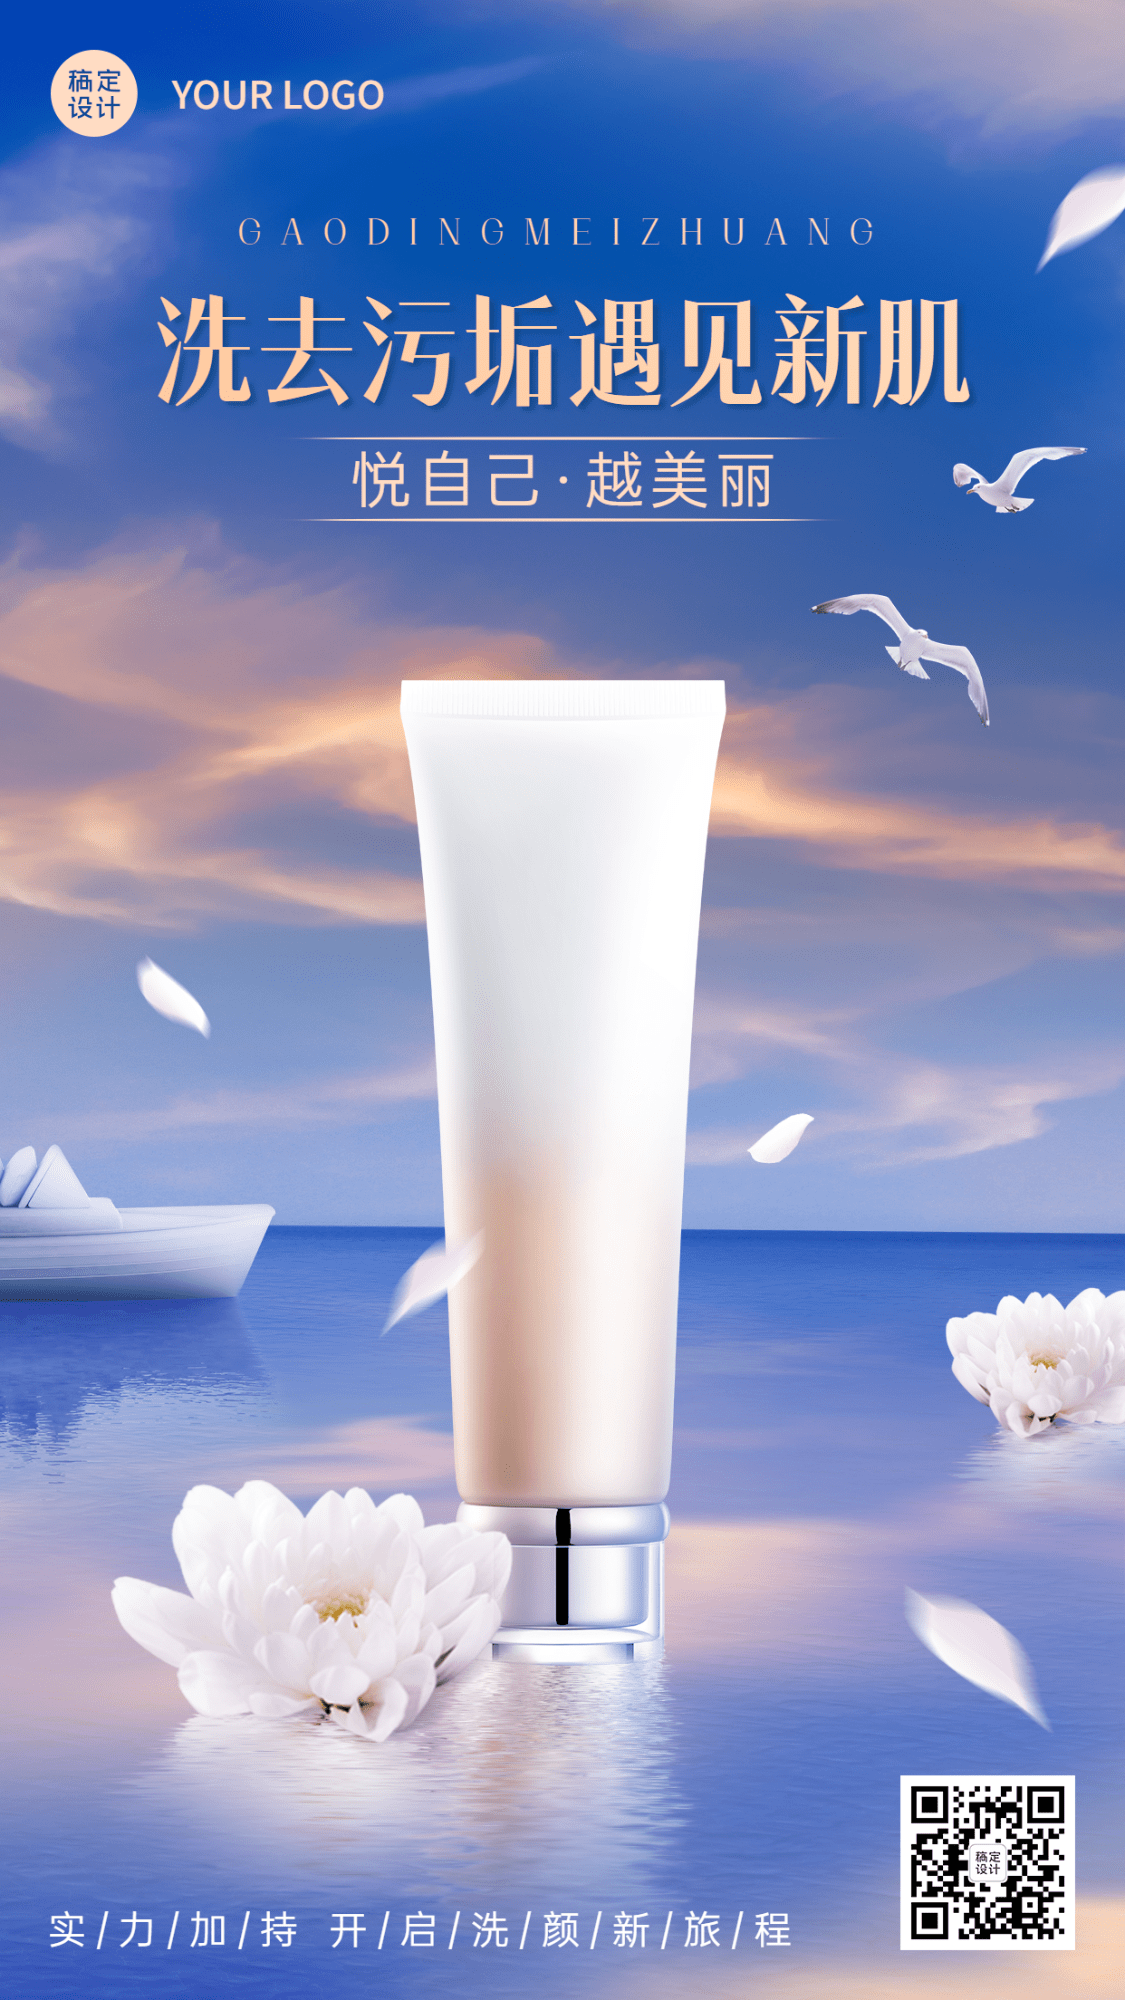 微商美容美妆护肤清洁产品营销手机海报预览效果